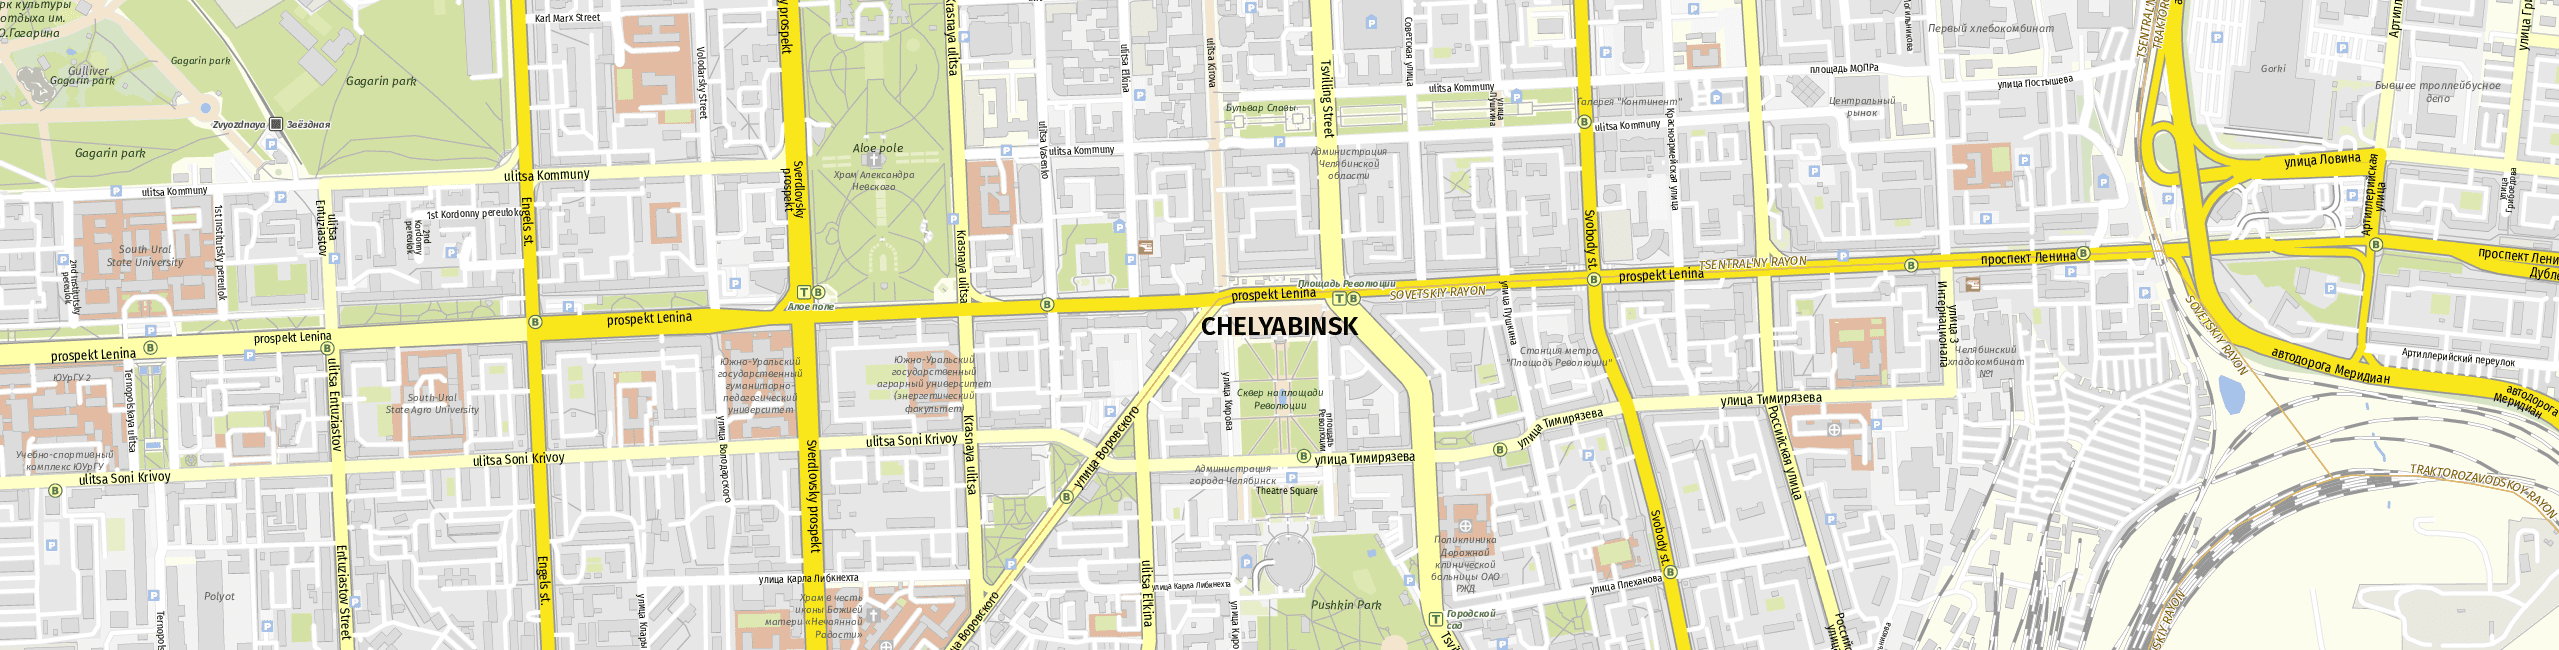 Stadtplan Chelyabinsk zum Downloaden.